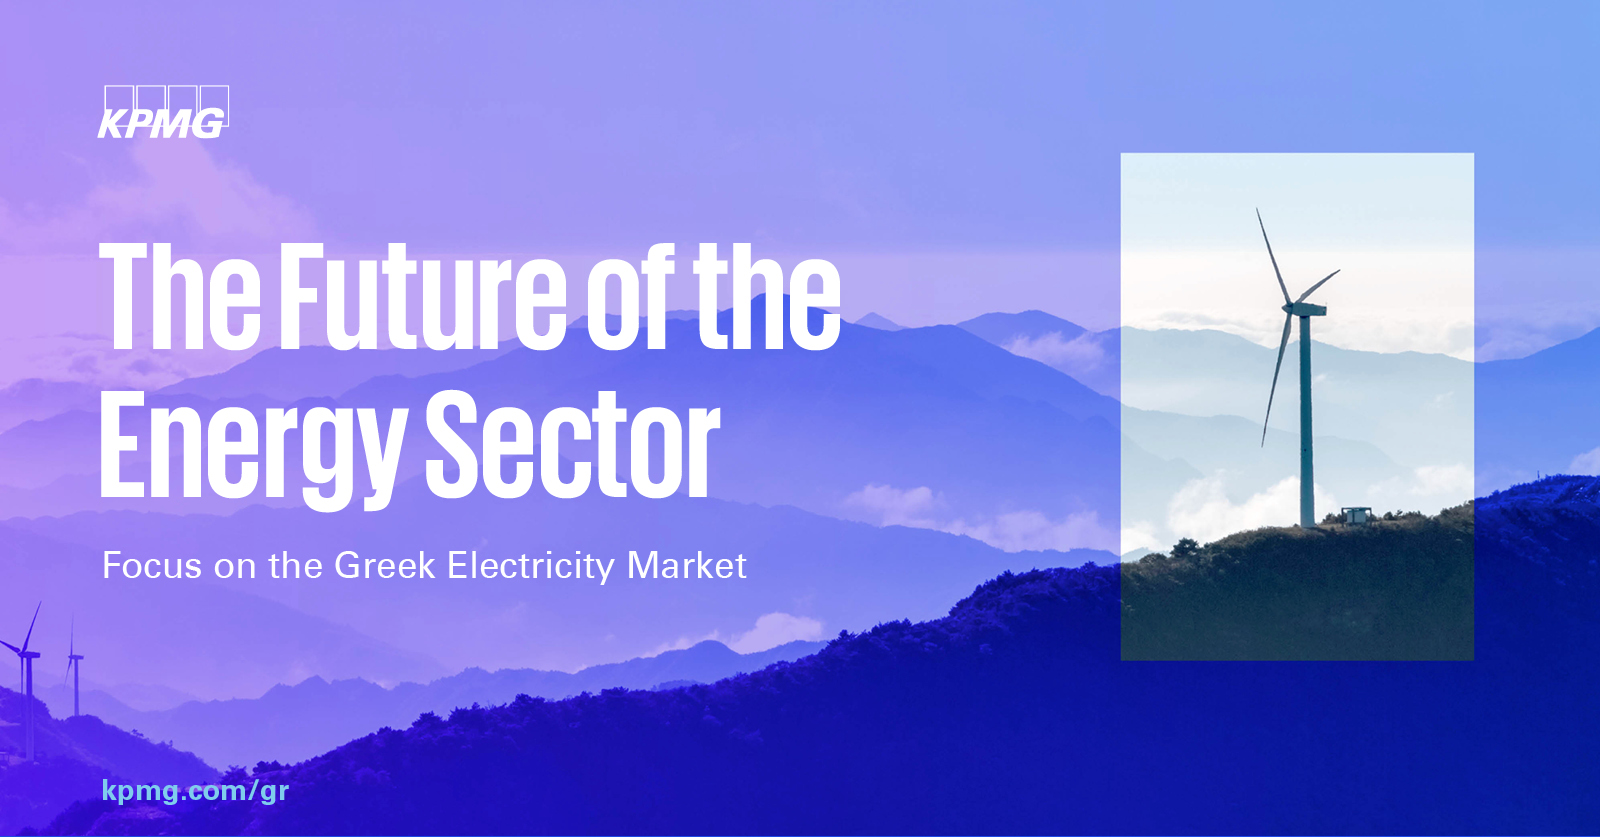 Έρευνα “The Future of the Energy Sector” της KPMG: Το αύριο και οι σύγχρονες τάσεις και προκλήσεις του ενεργειακού κλάδου